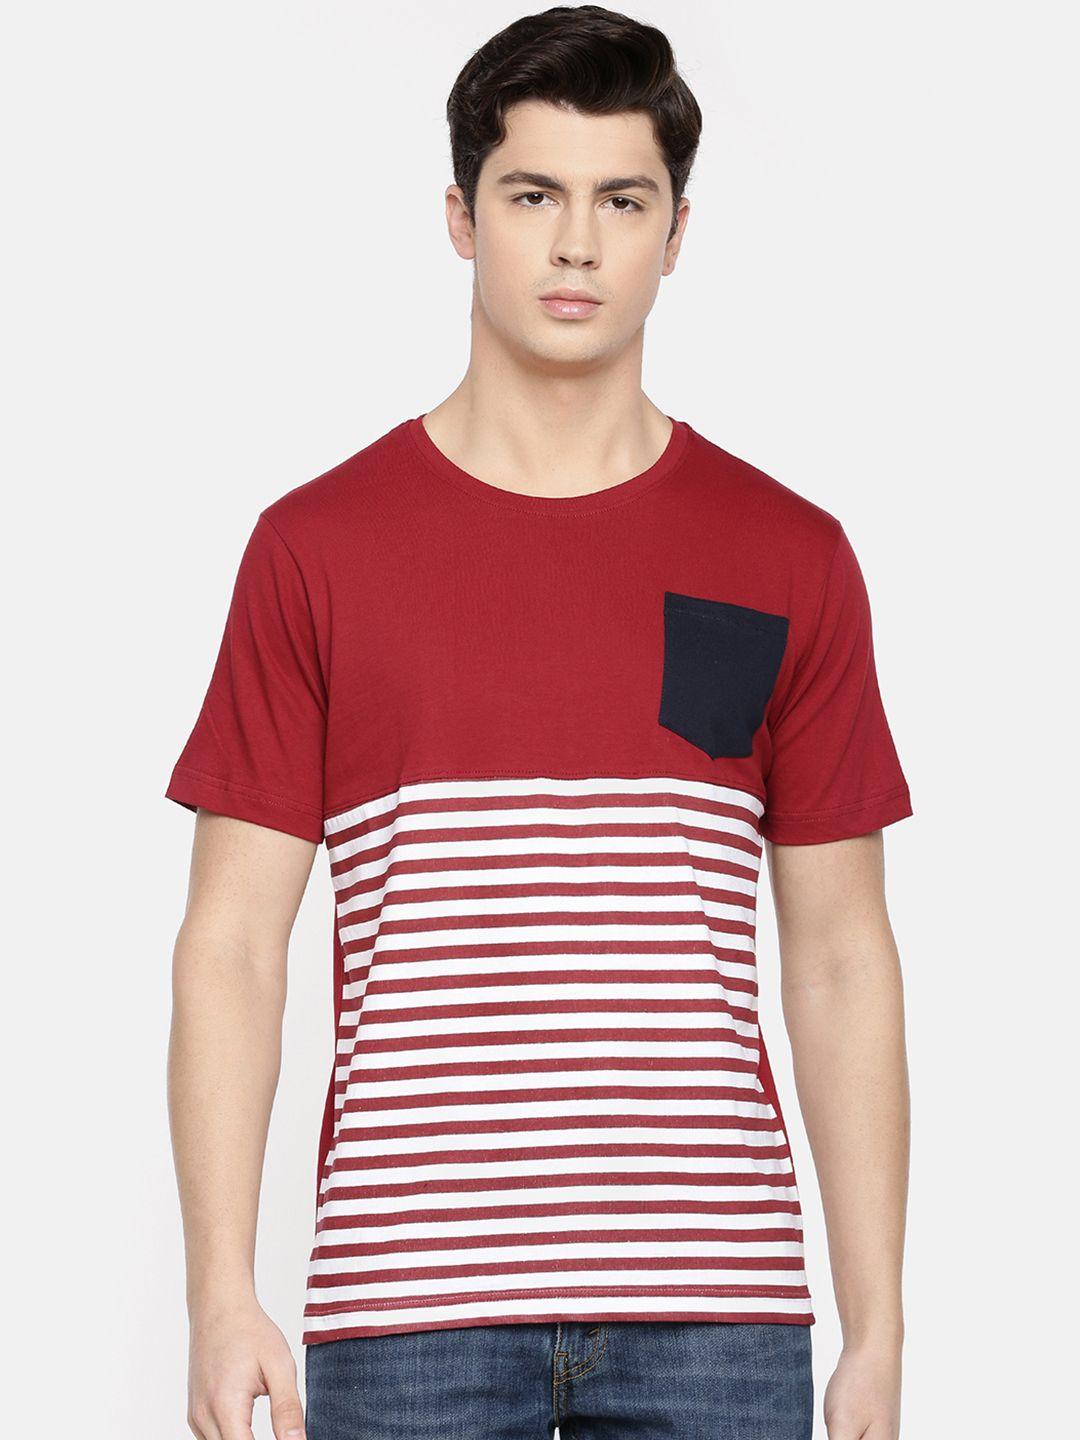 chennis men maroon striped round neck t-shirt